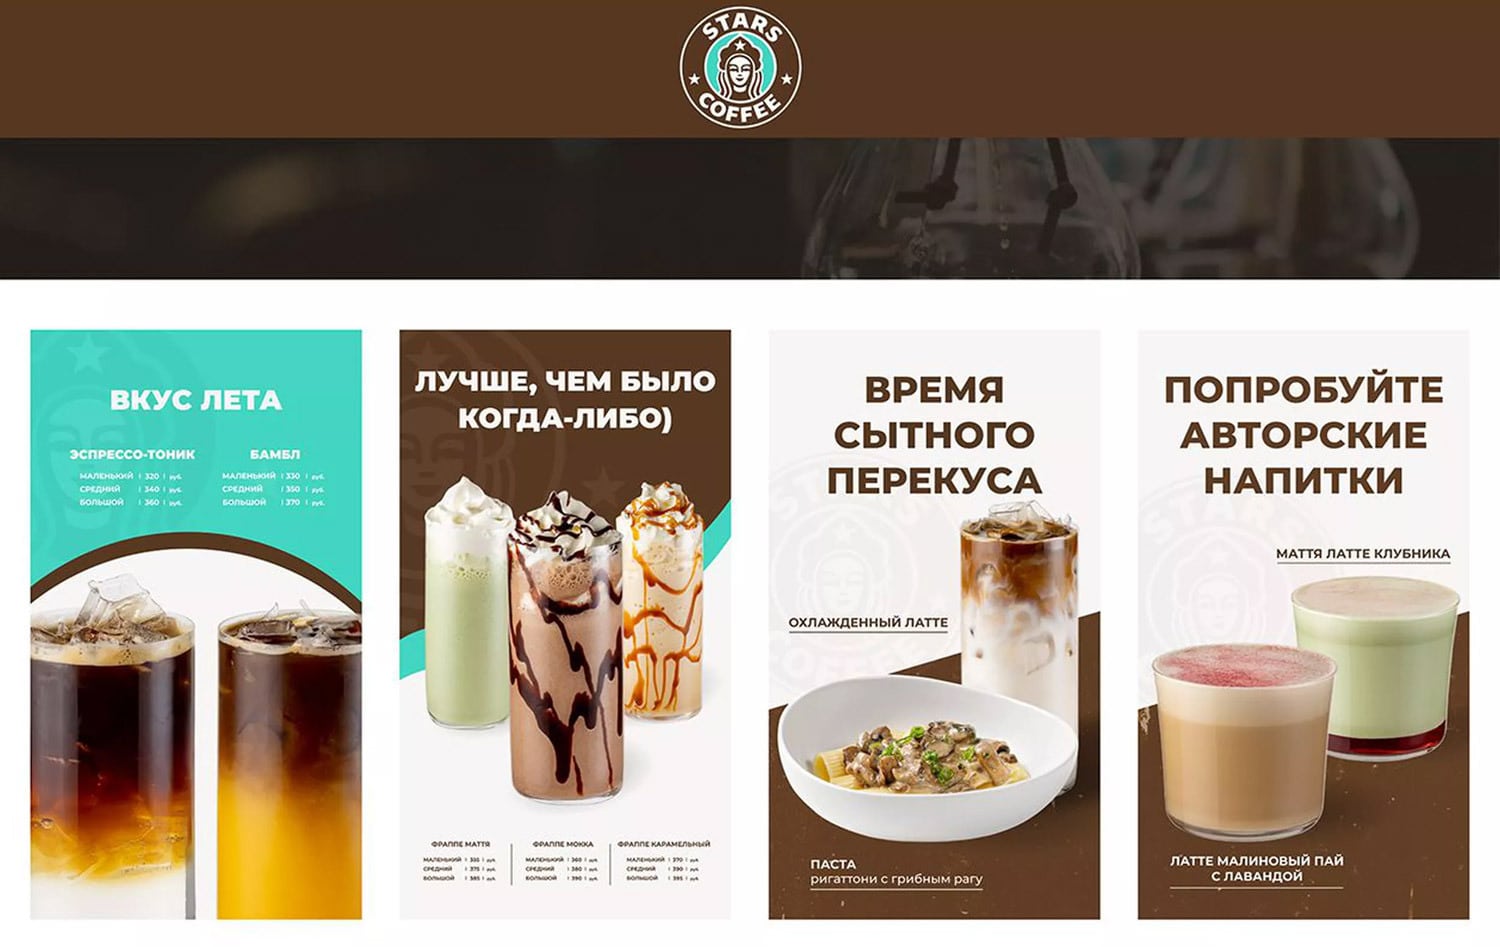 俄羅斯星巴克更名為「Stars Coffee」並啟用新LOGO 6